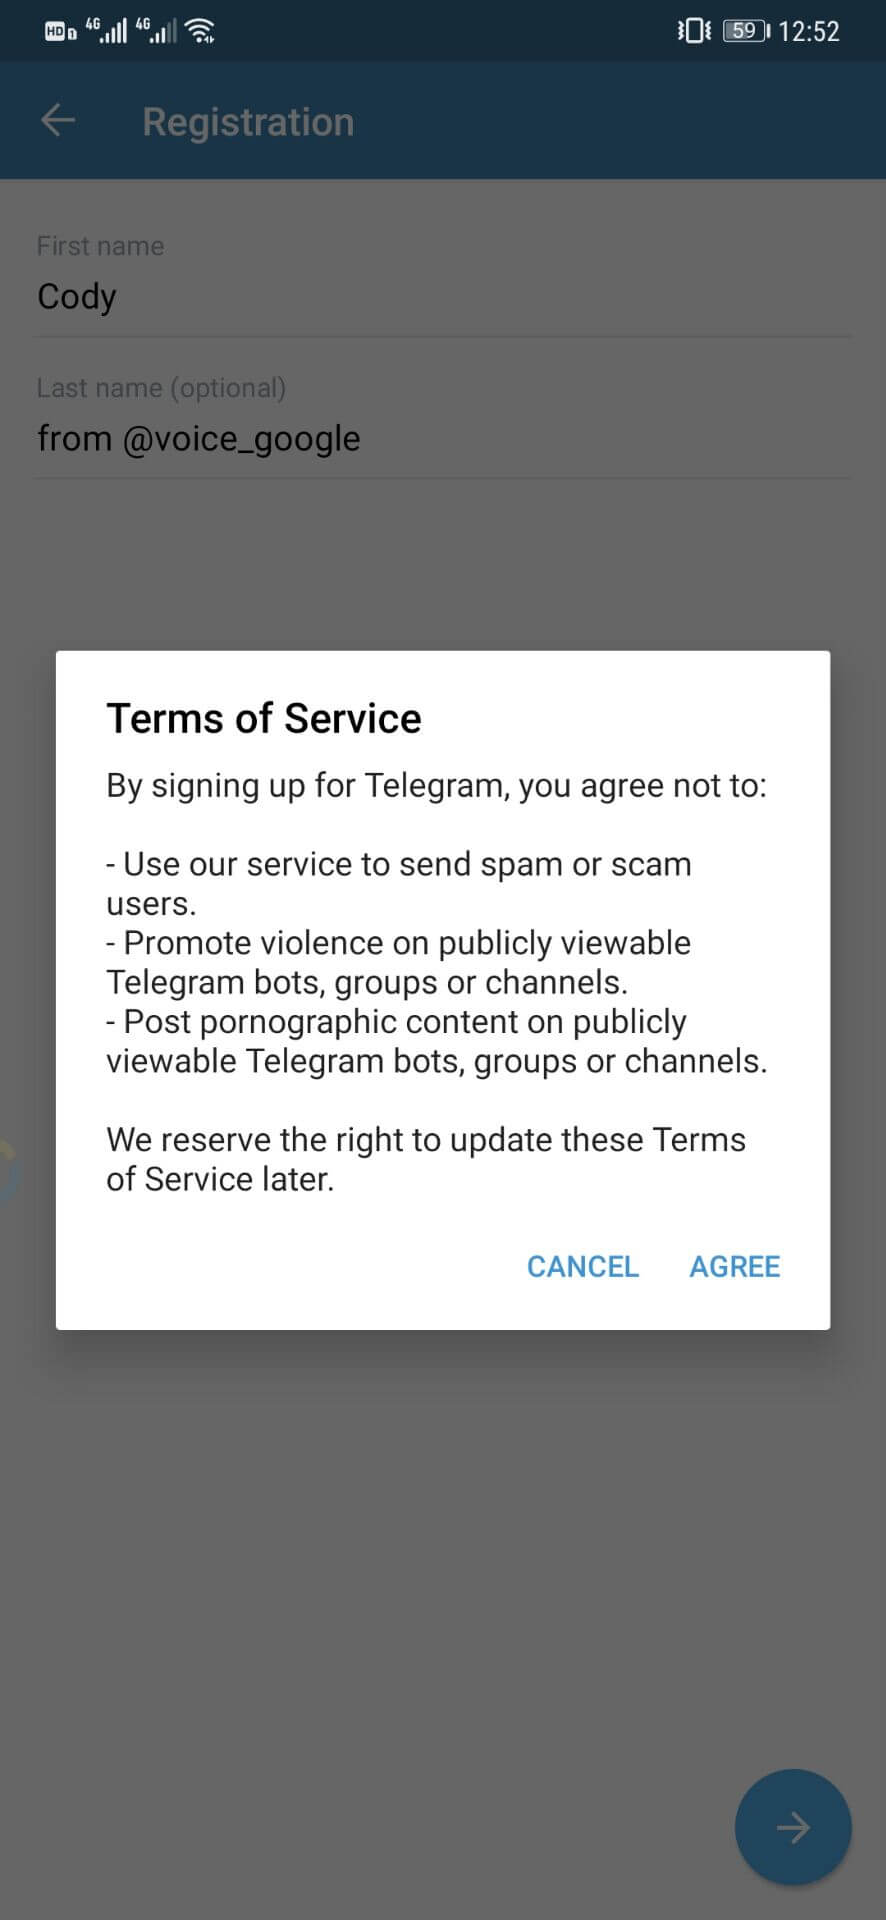 Telegram注册设置昵称并接受条款